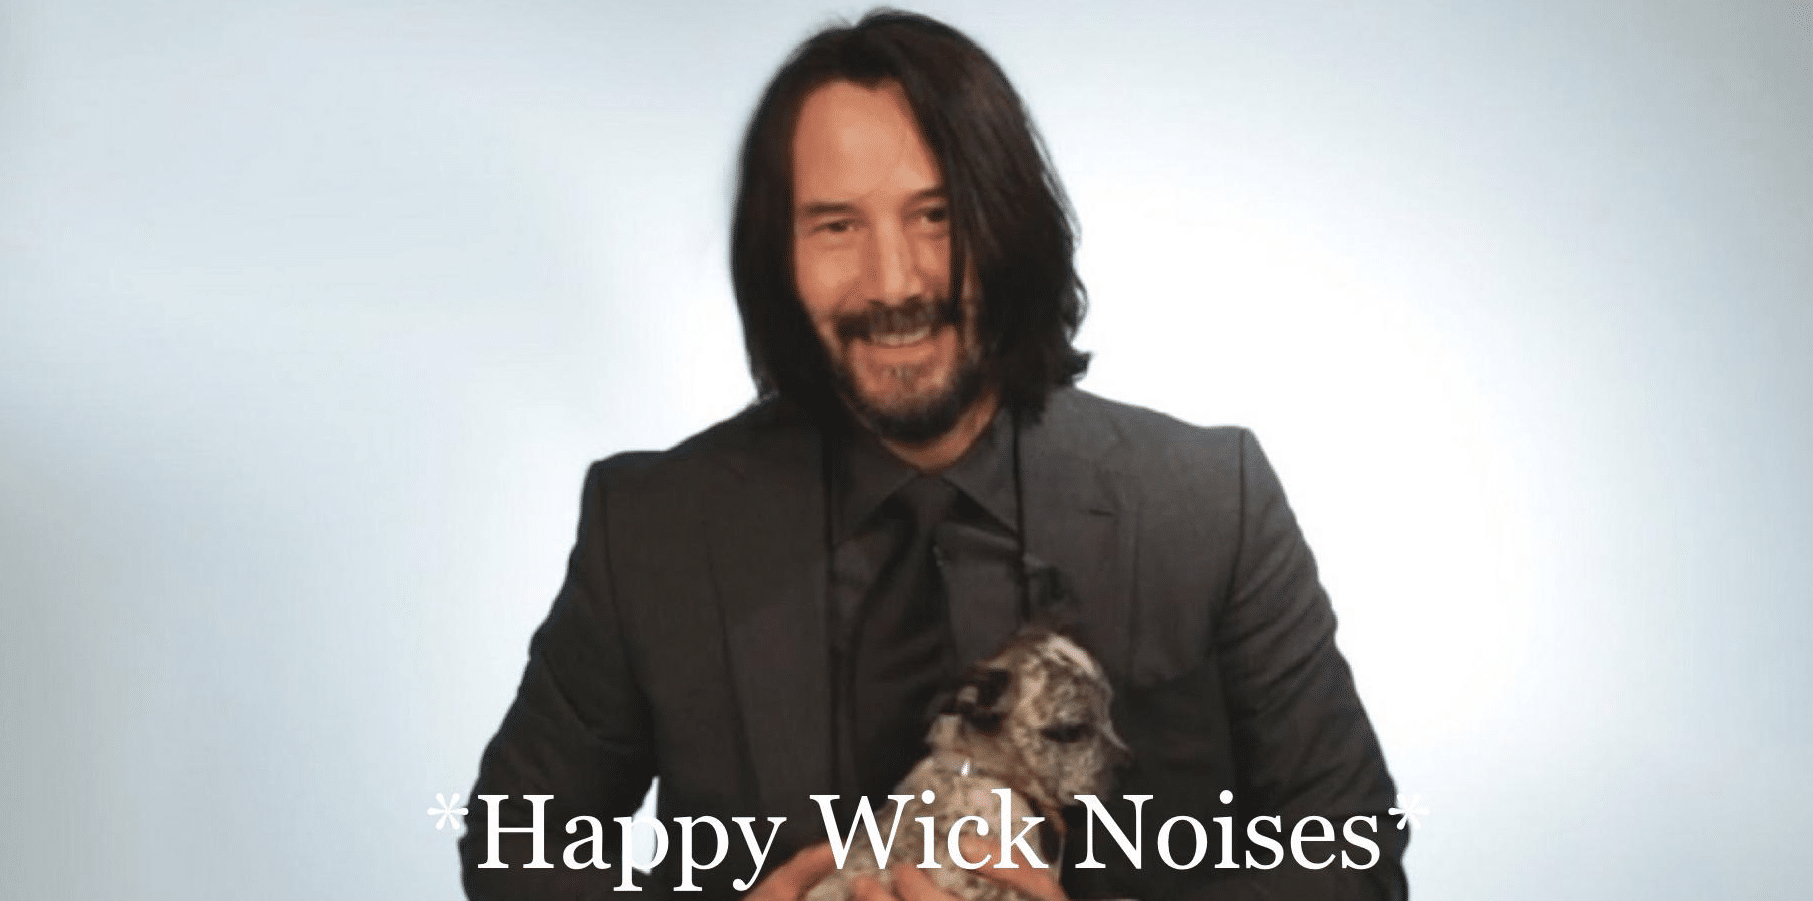 Happy Wick Noises  meme template blank Keanu Reeves